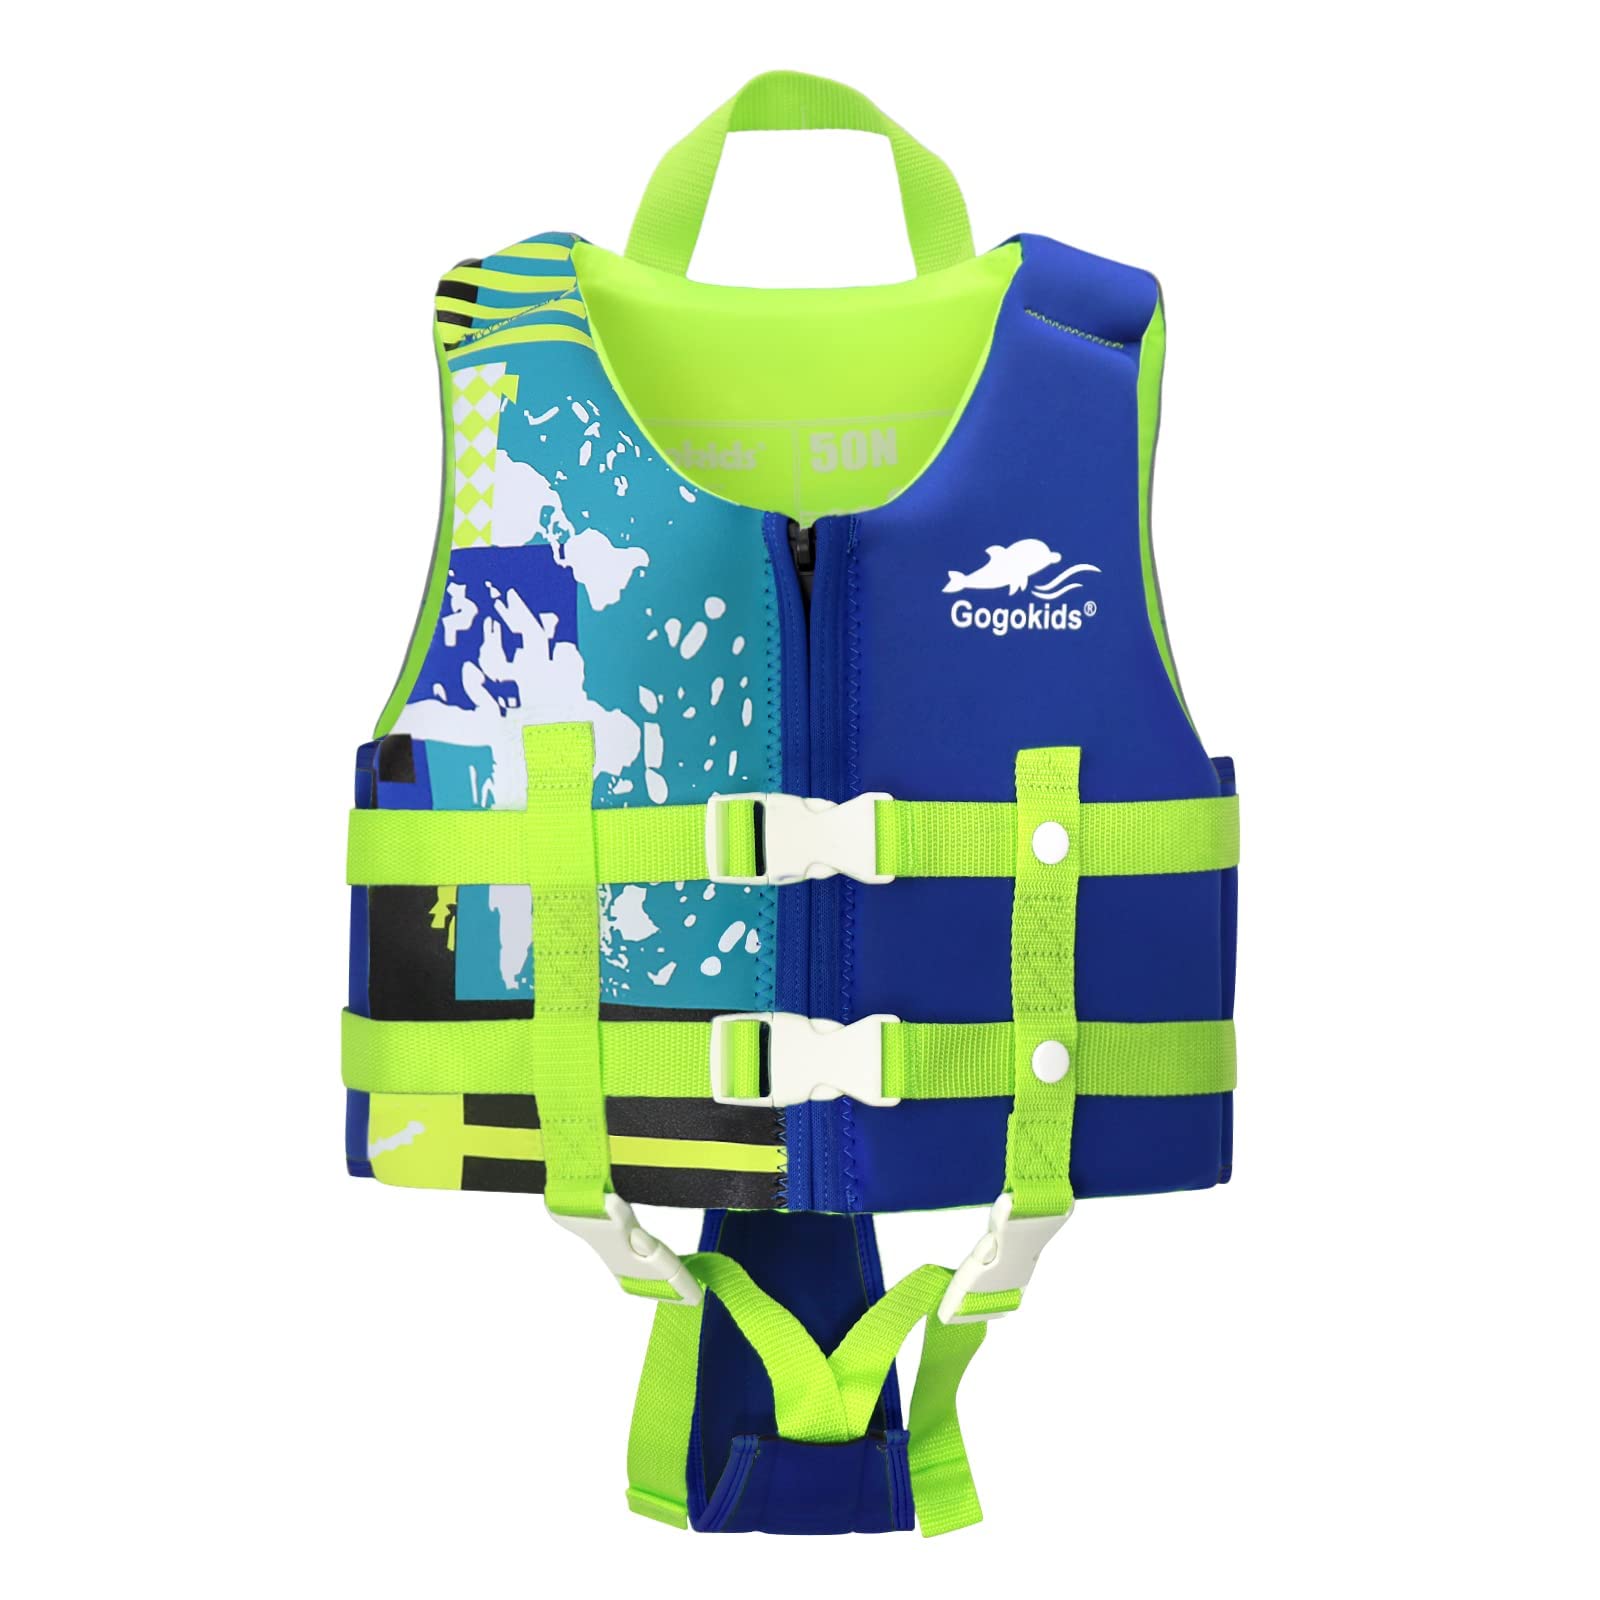 Gogokids Kinder Schwimmweste Folat Jacket, Kleinkind Schwimmtraining Bouyancy Badeanzug Assist Badebekleidung für 13-16 kg 1-3 Jahre Baby Kids